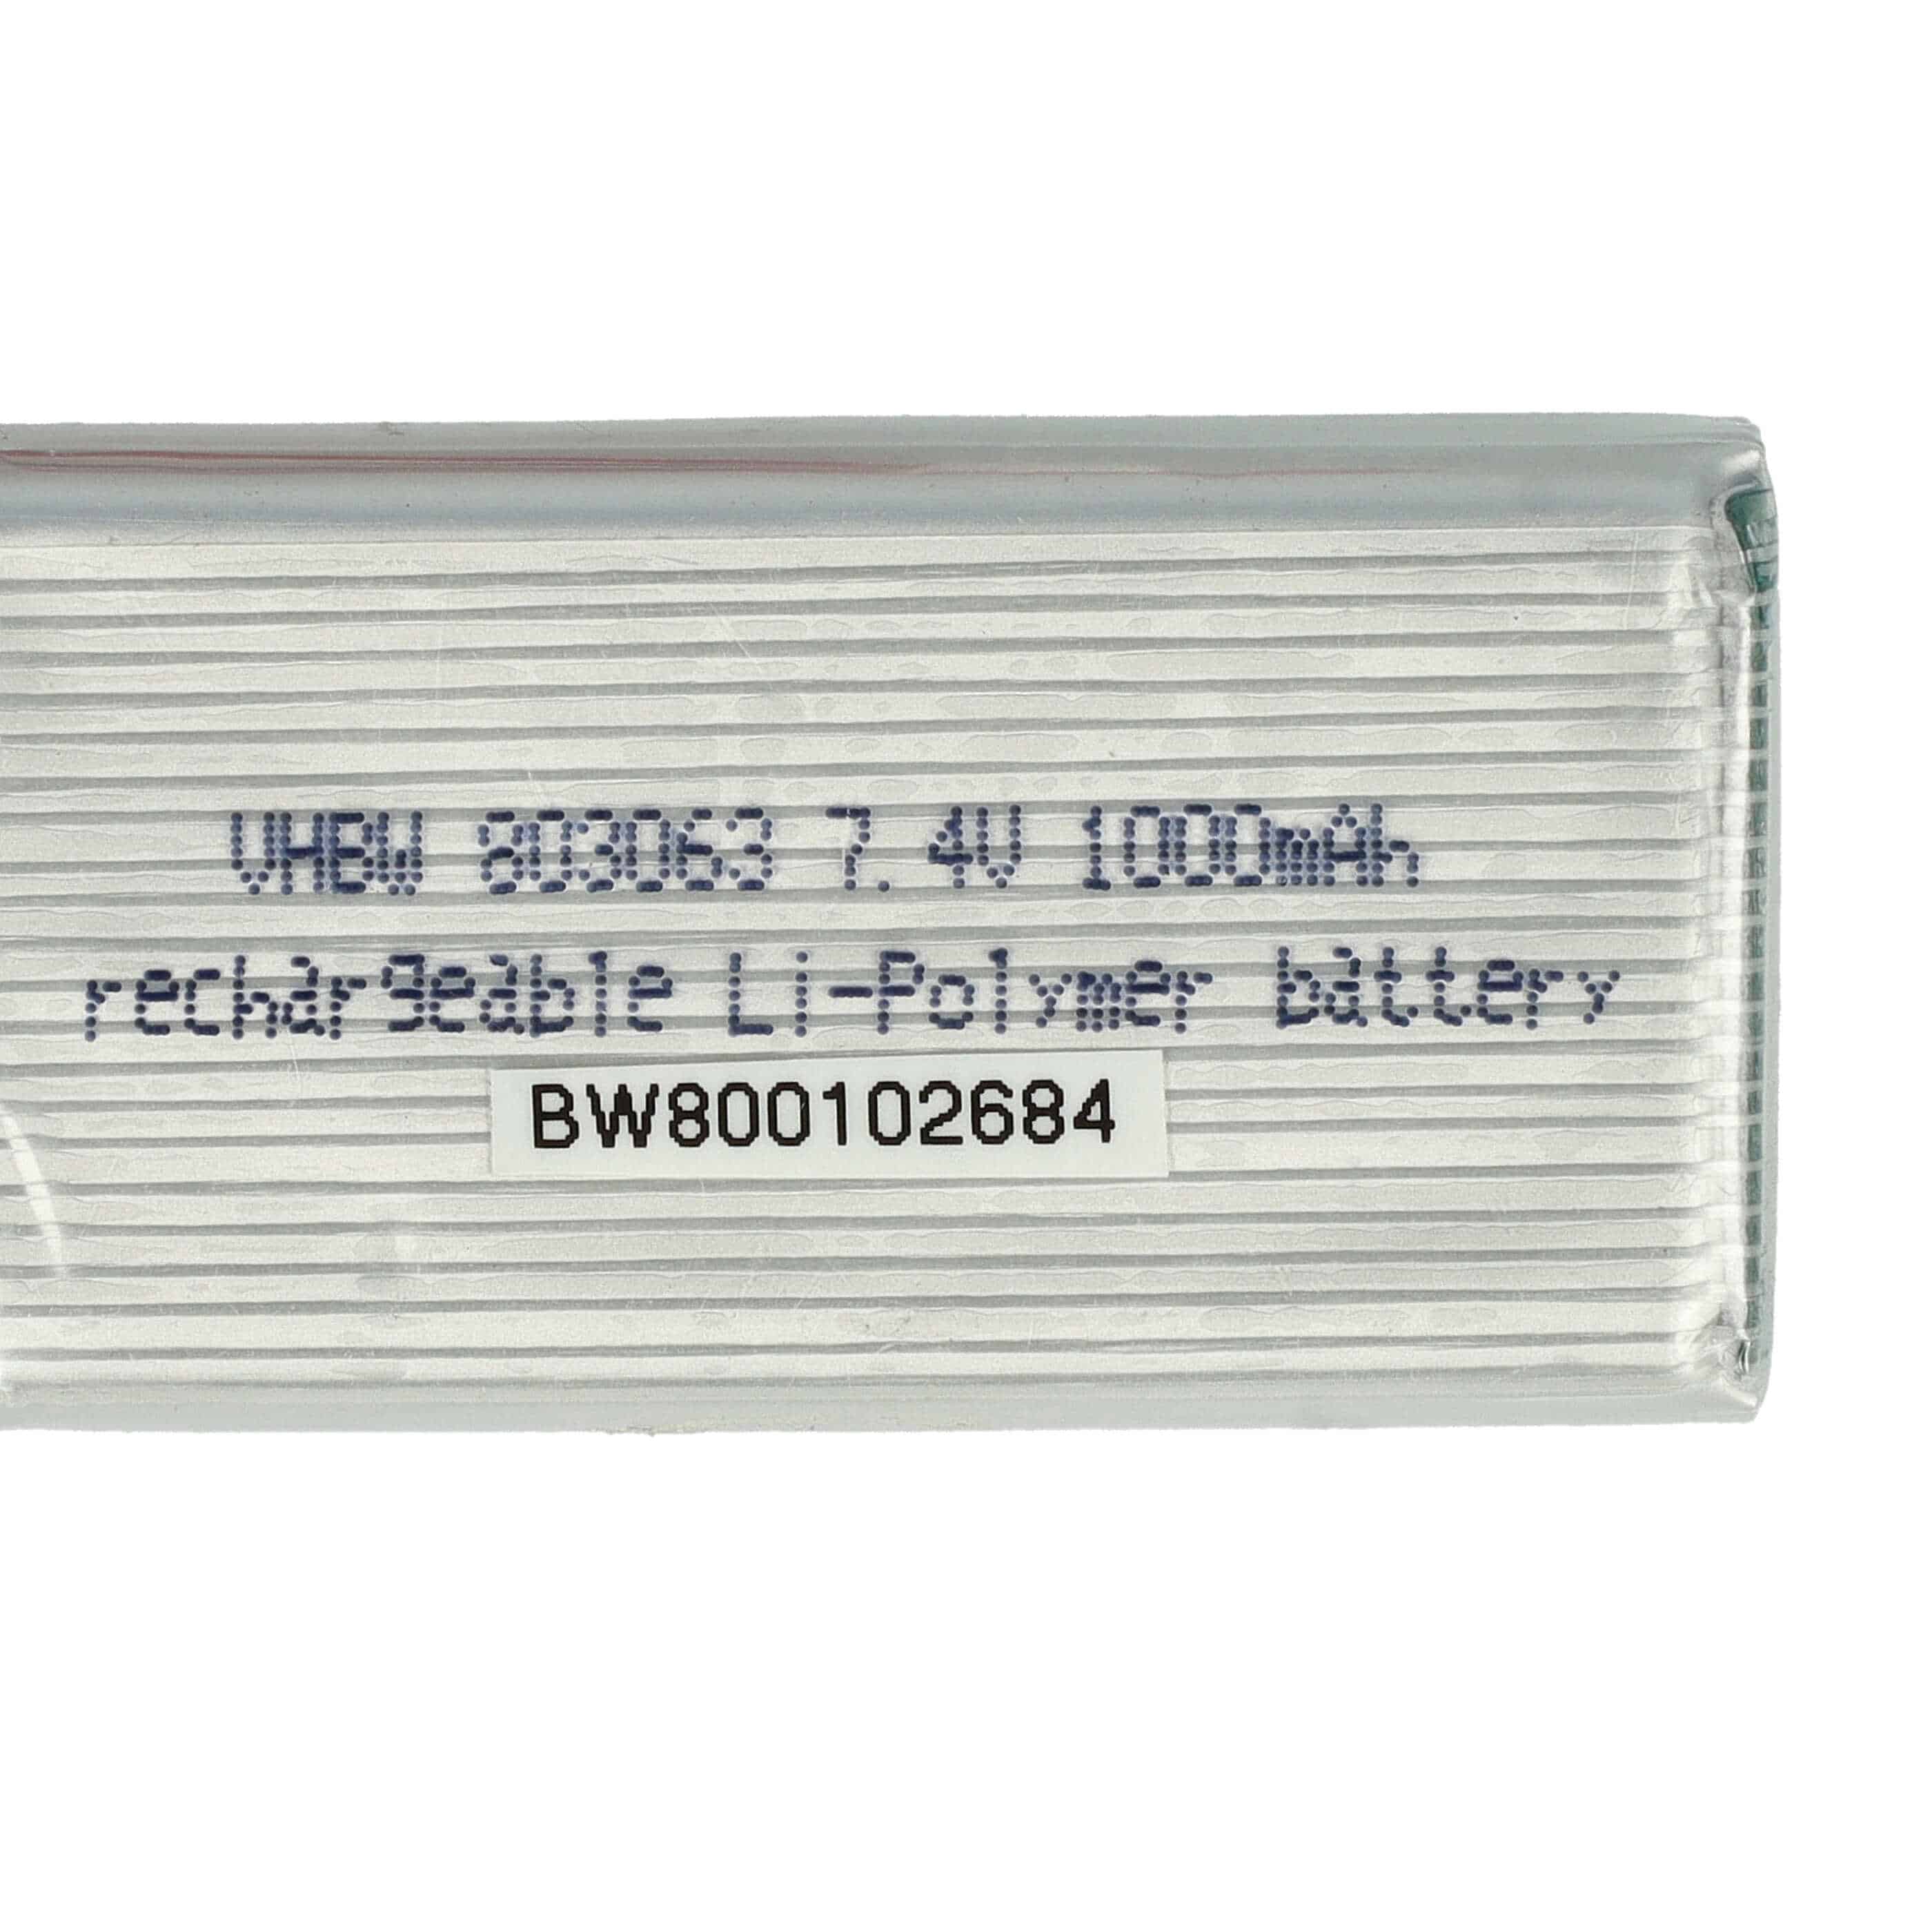 Akumulator do modeli zdalnie sterowanych RC - 1000 mAh 7,4 V LiPo, JST-SYP-2P